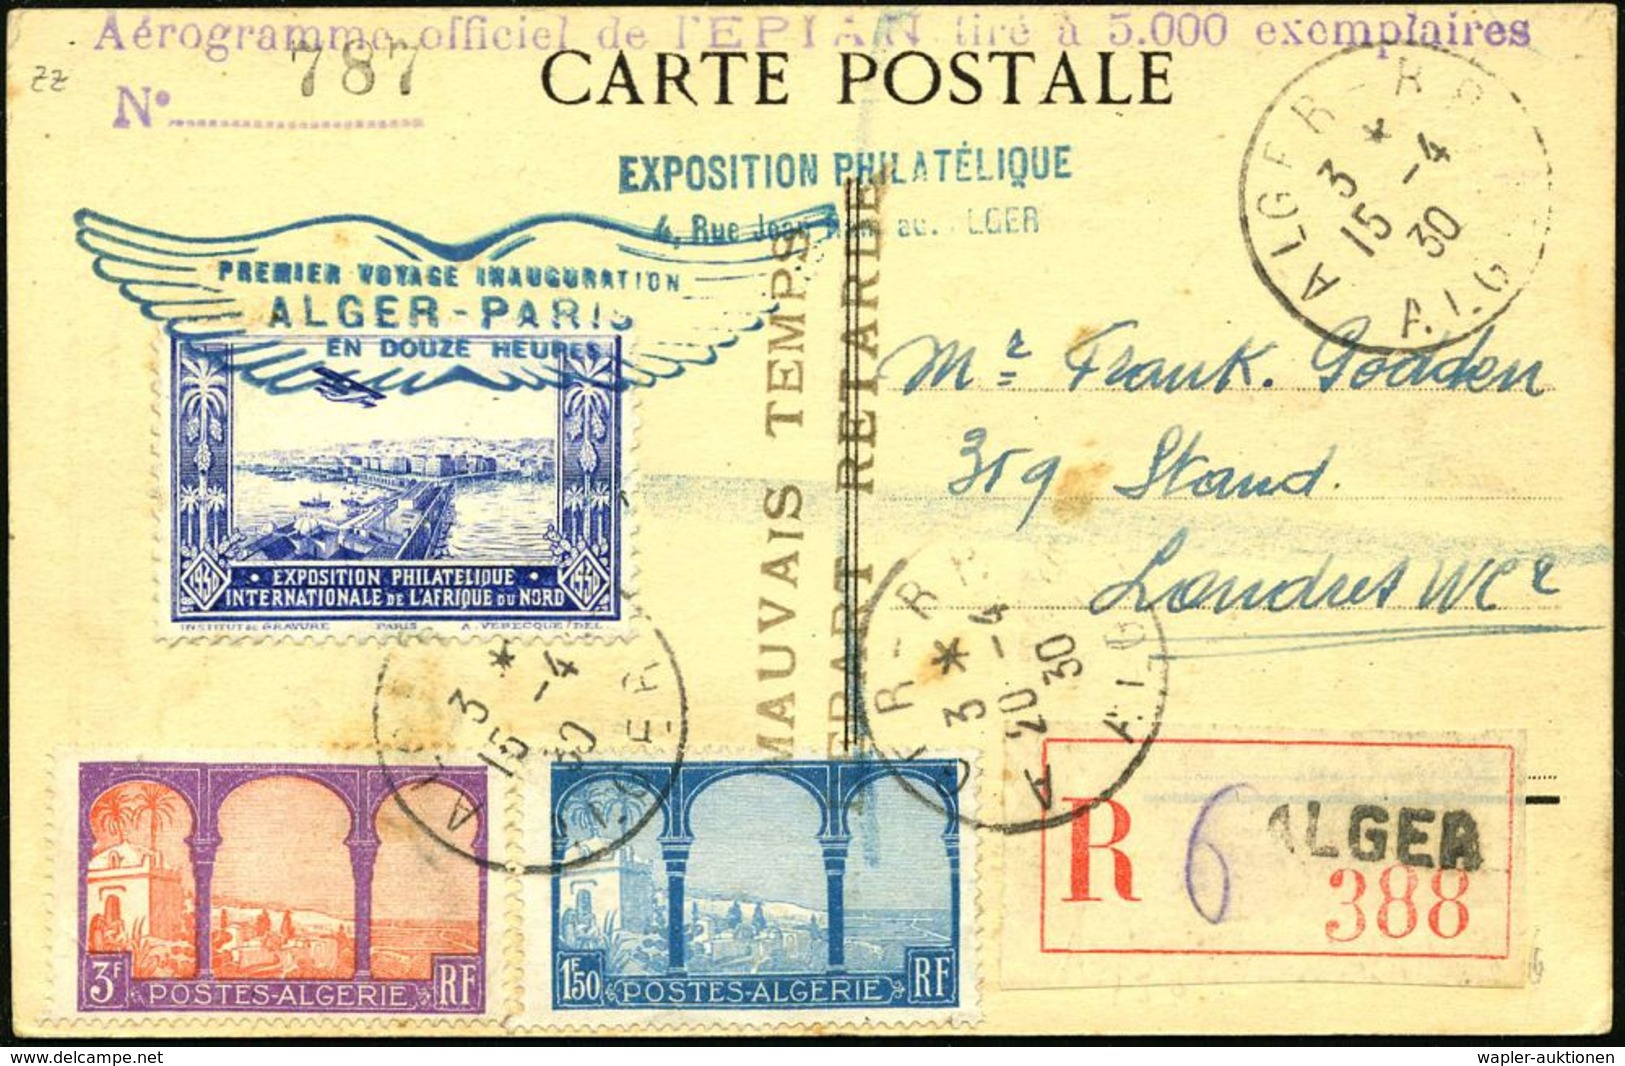 ALGERIEN 1930 (15.4.) Erstflug: Algier - Paris, Blaue Flp.-Vign.: Expos.Philatélique + Bl. Flügel-HdN: PREMIER VOYAGE IN - Autres (Air)